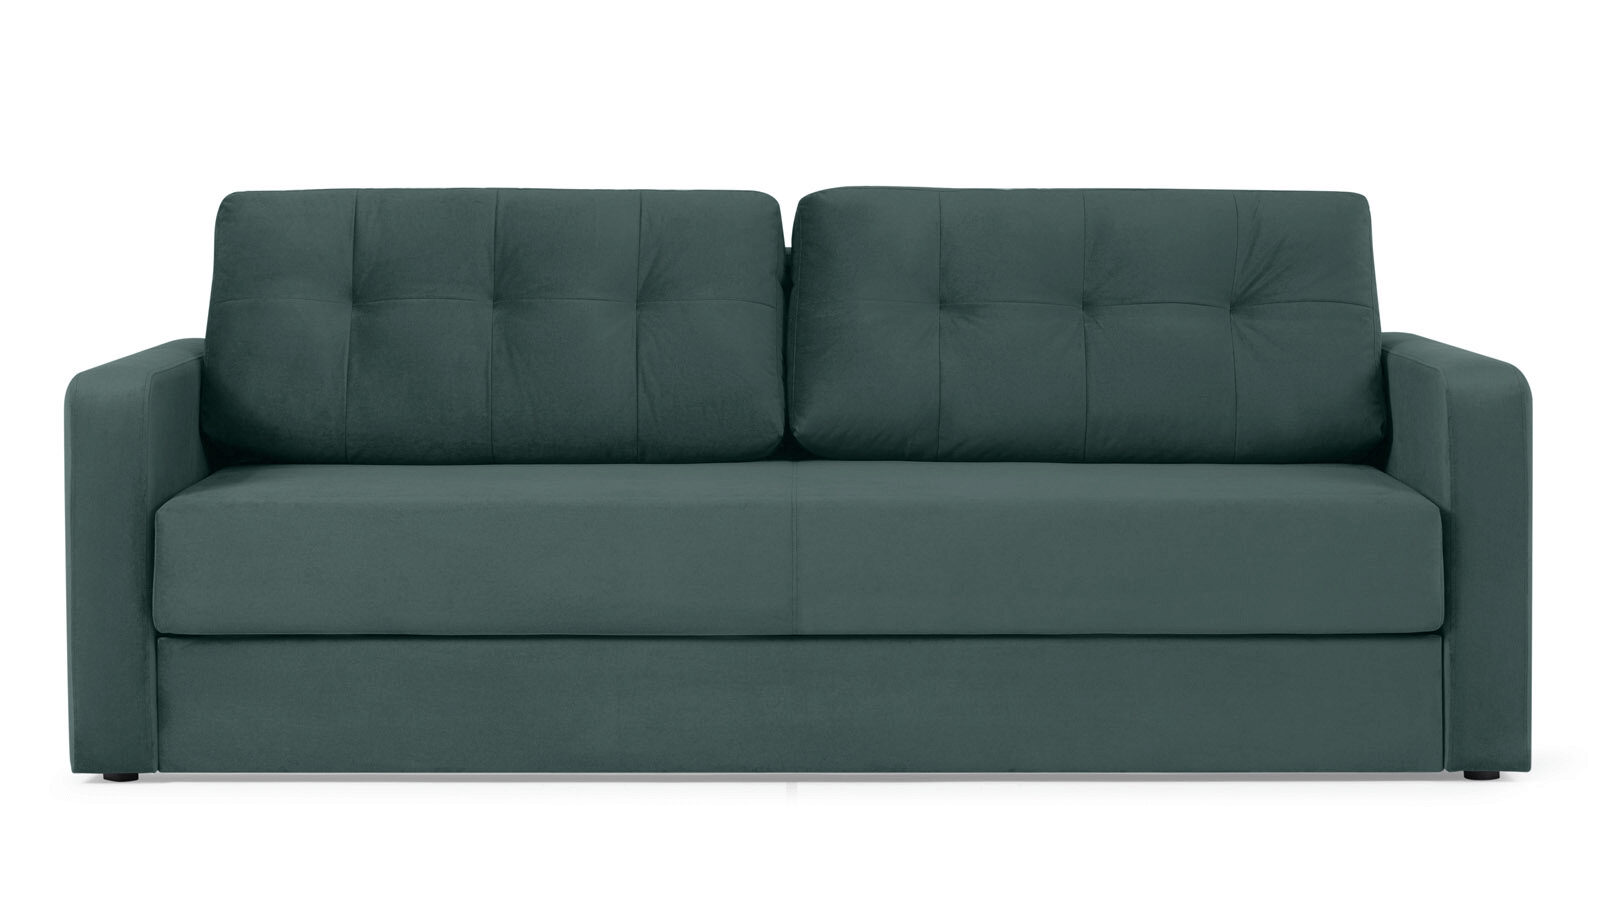 Прямой диван Loko Pro с широкими подлокотниками, с матрасом комбинированной жесткости диван газелей